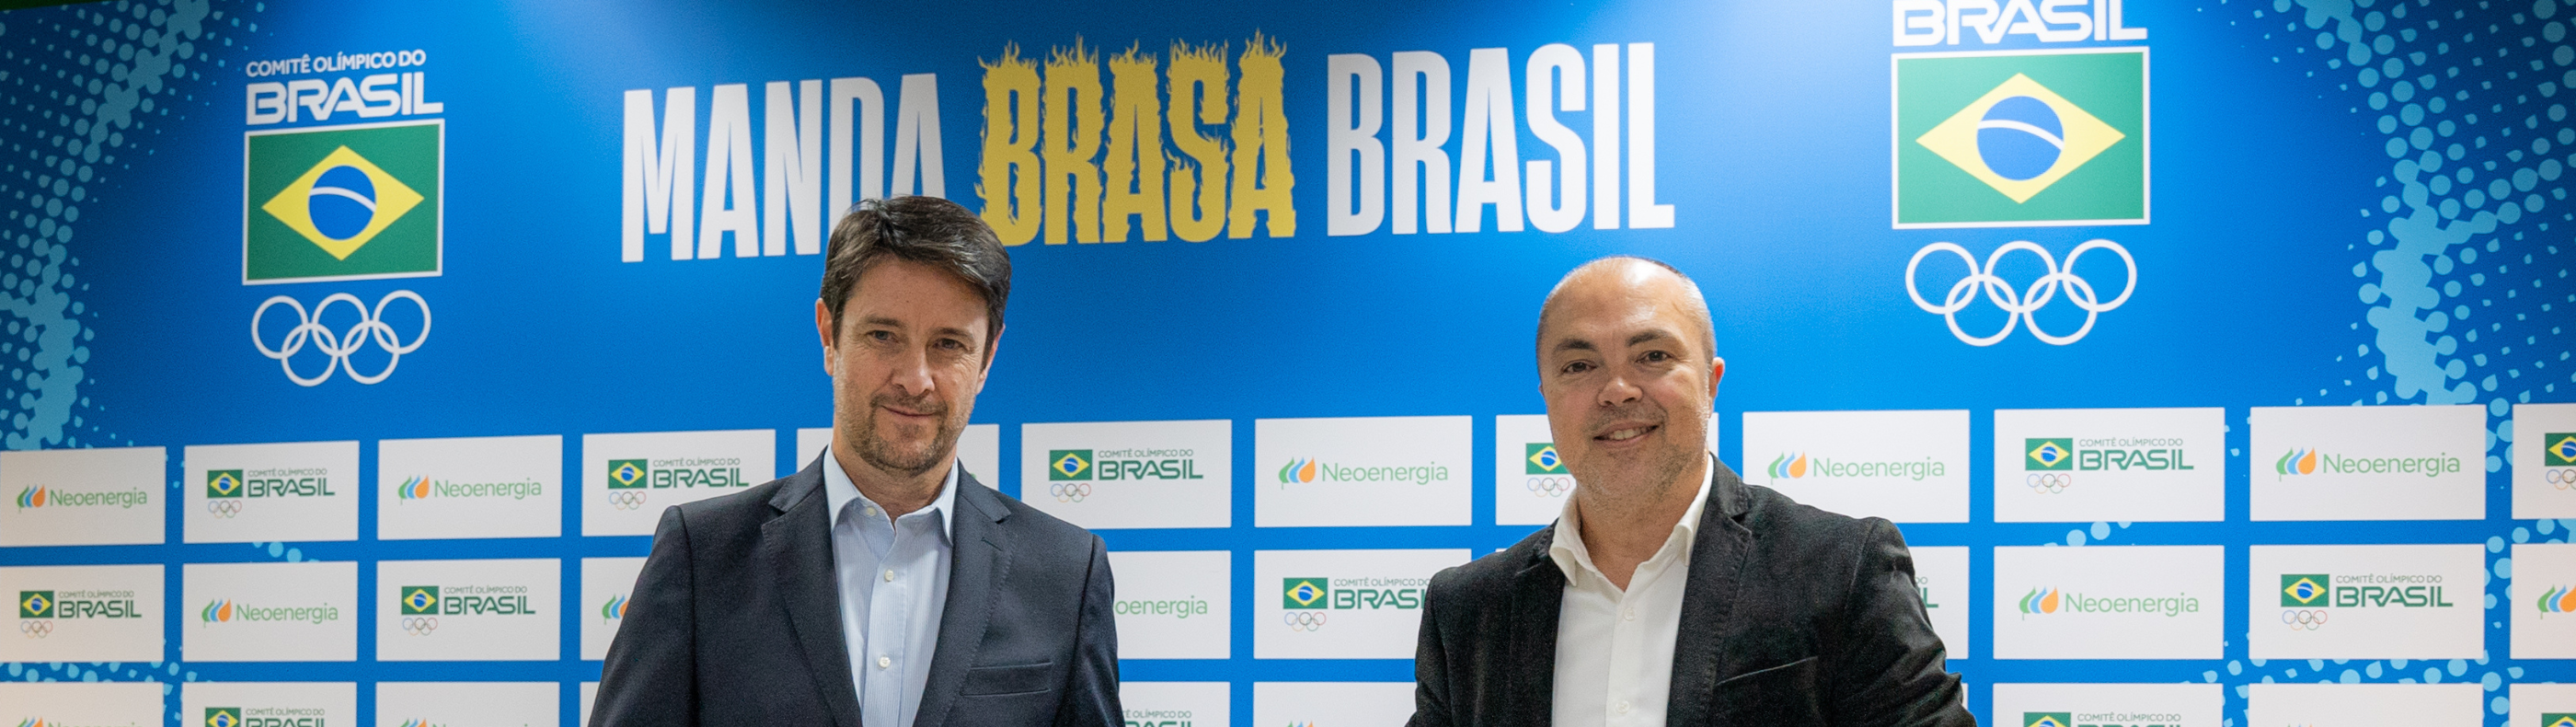 Eduardo Capelastegui, CEO da Neoenergia (E), e Rogério Sampaio, diretor-geral do COB, celebram a parceria